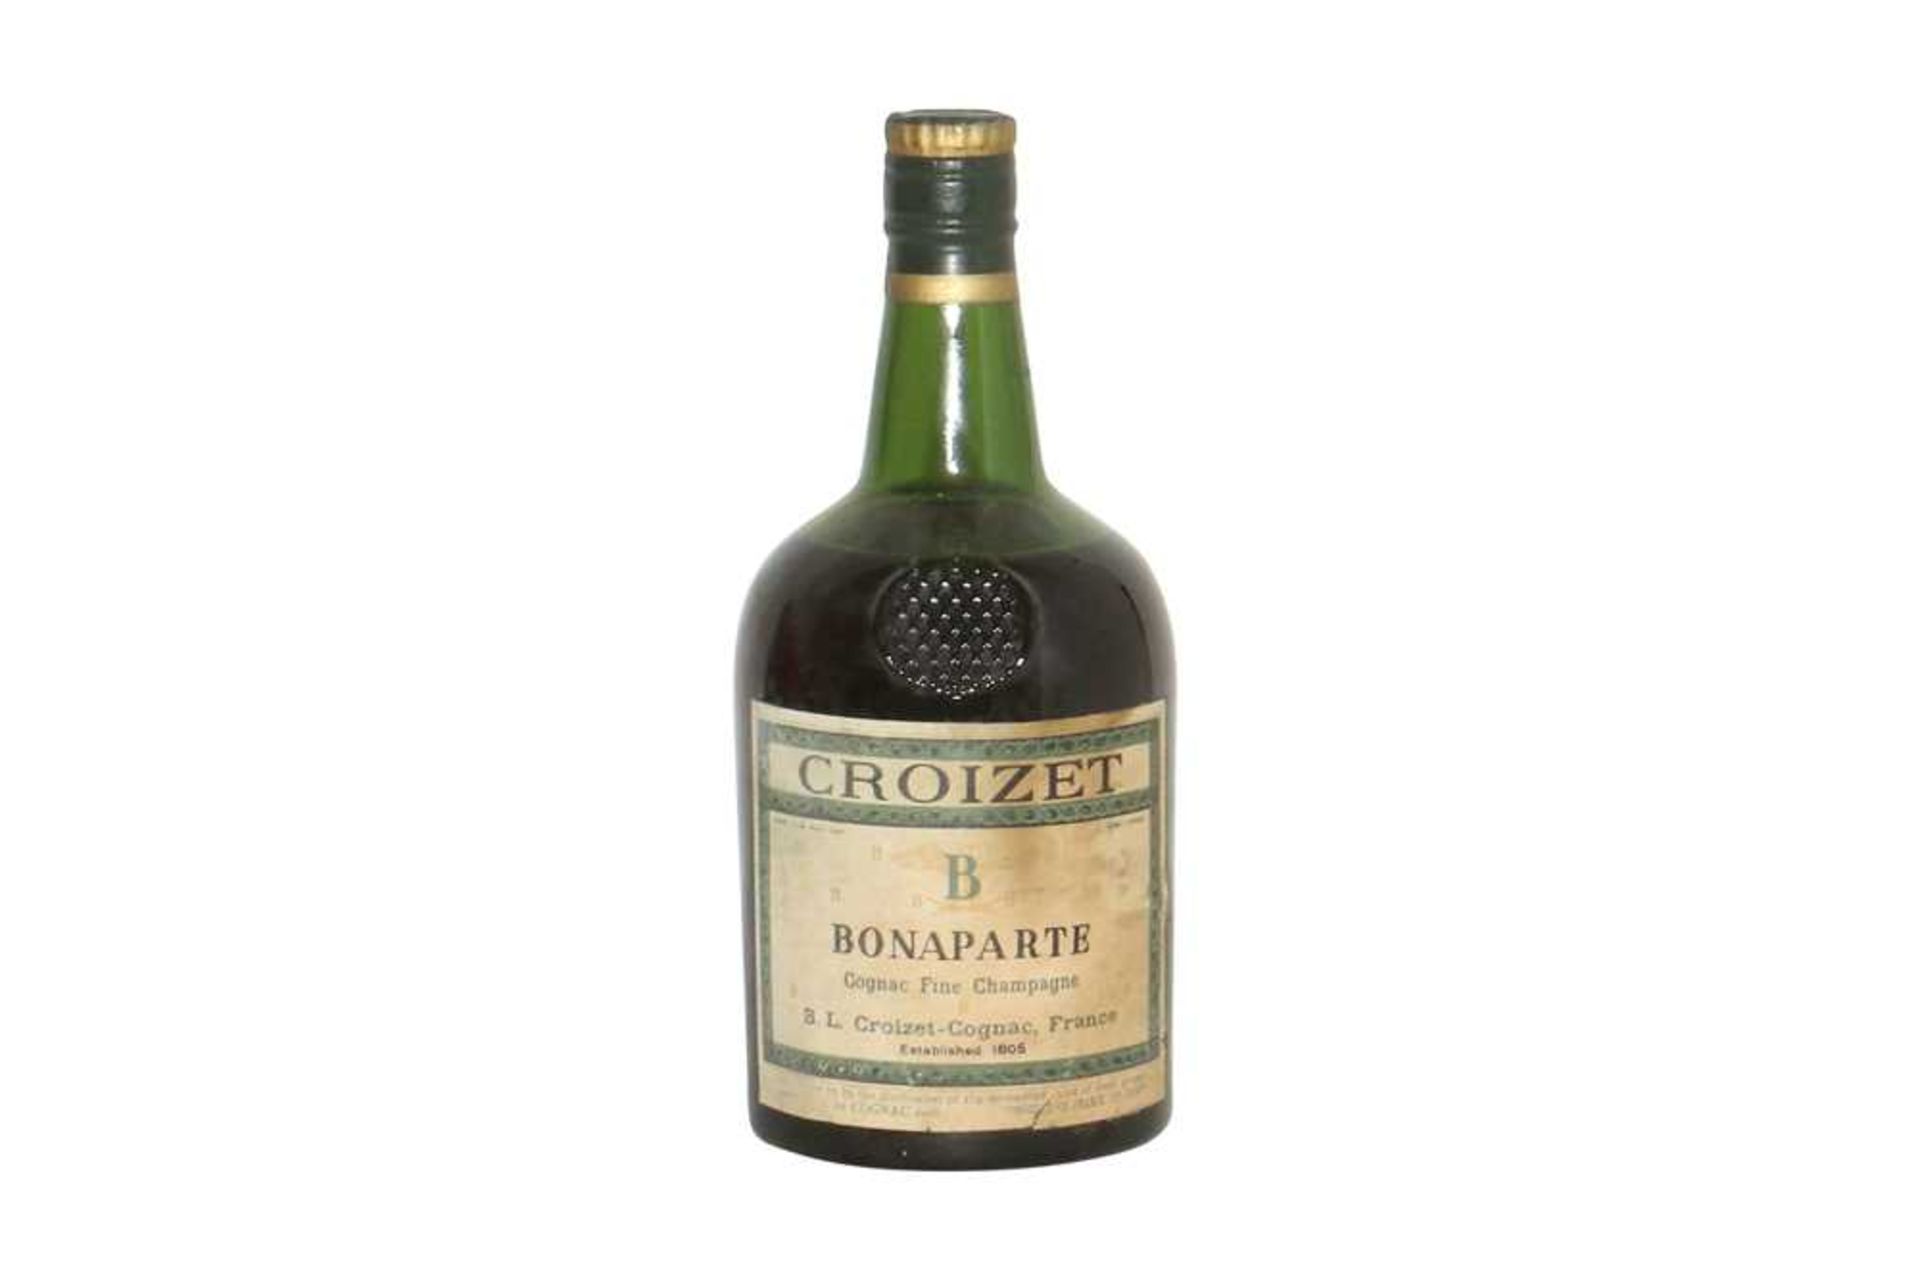 Croizet, Bonaparte Cognac Fine Champagne, one bottle